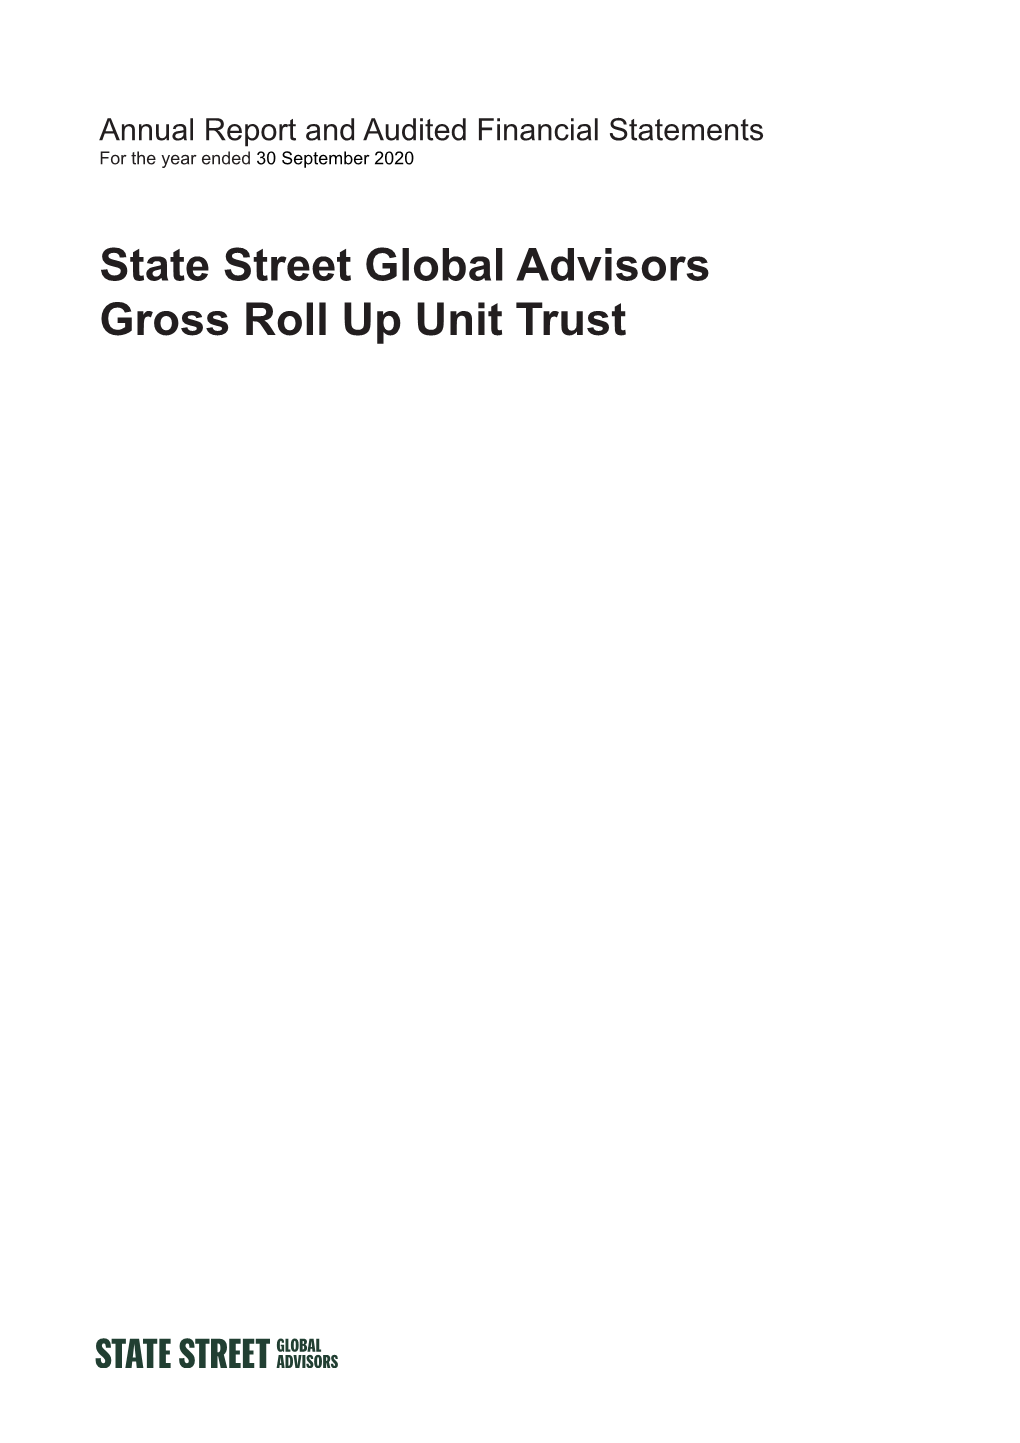 State Street Global Advisors Gross Roll up Unit Trust